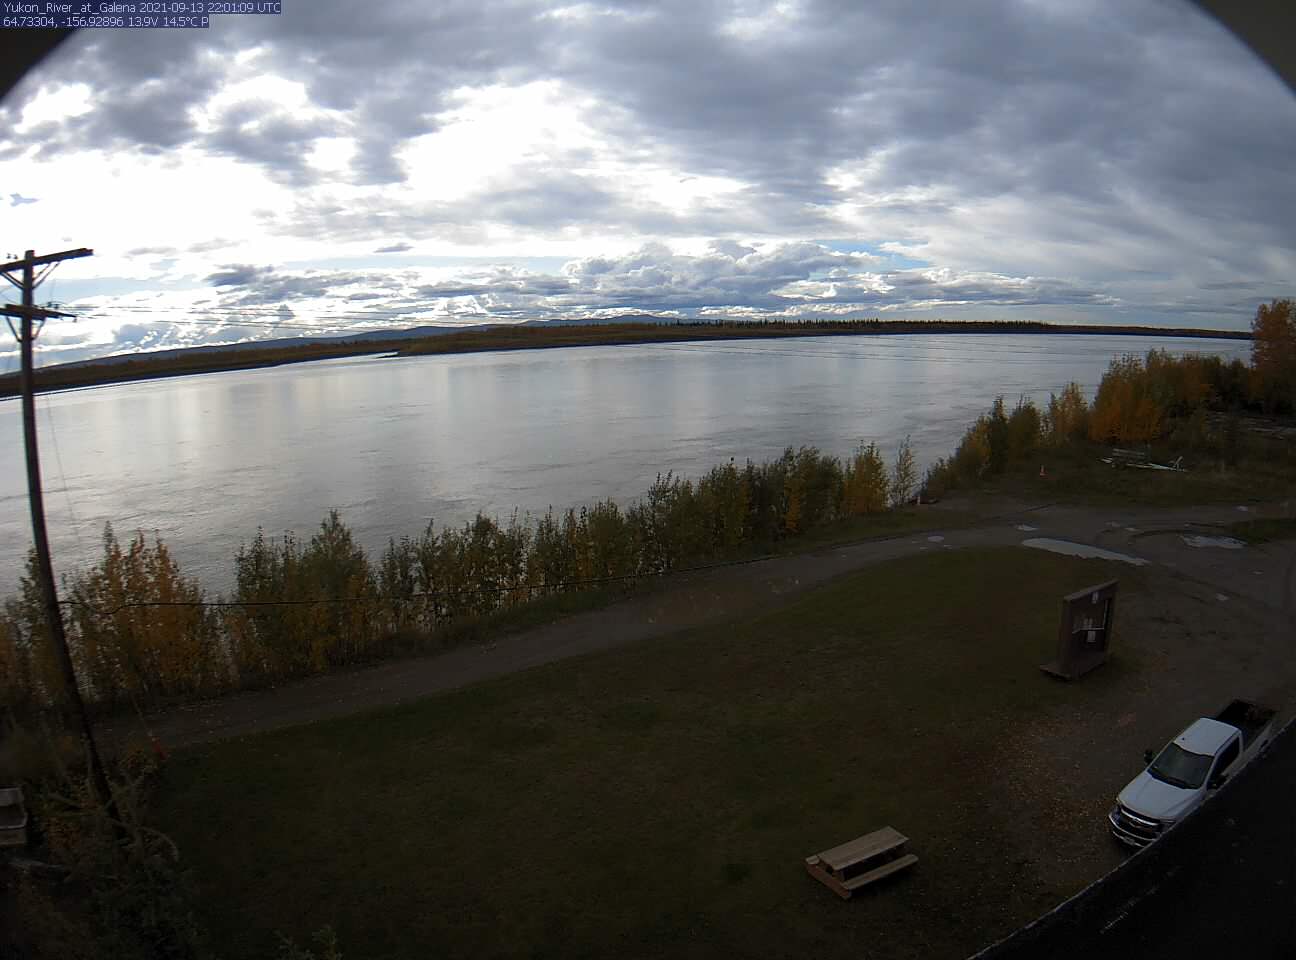 Yukon_River_at_Galena_20210913220110.jpg